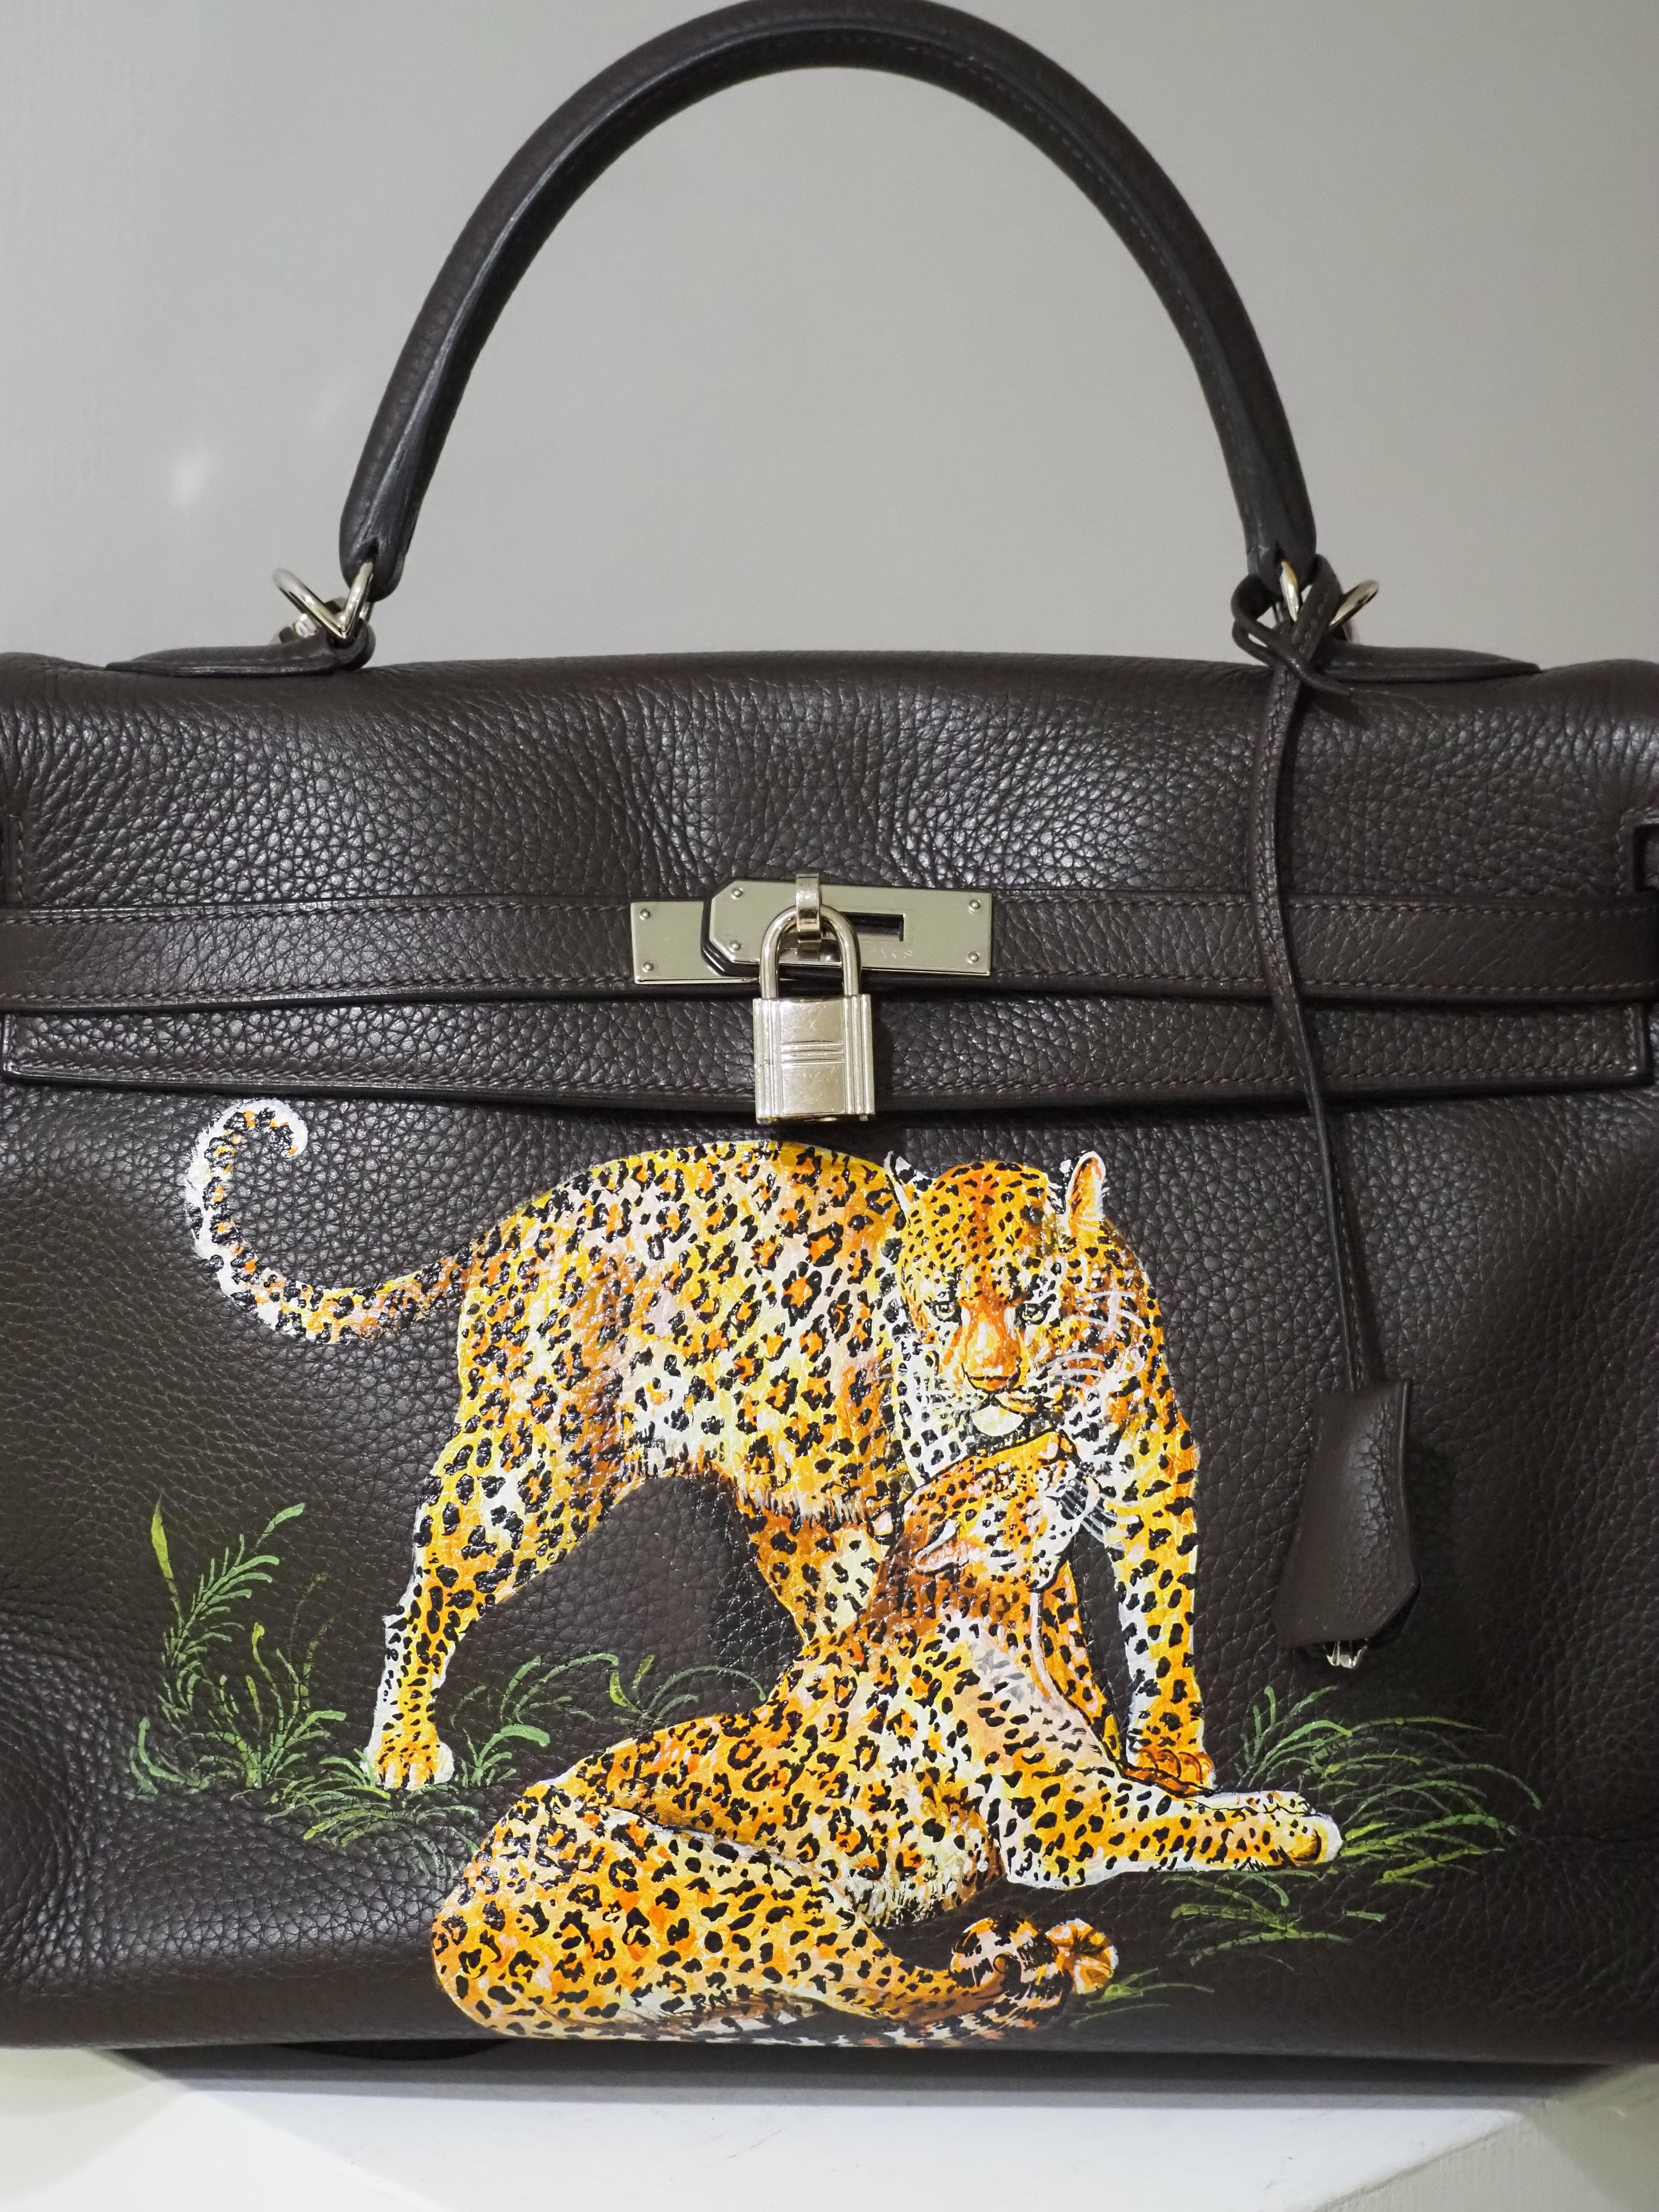 Hermès 35 Brown leather handpainted handbag shoulder bag 2